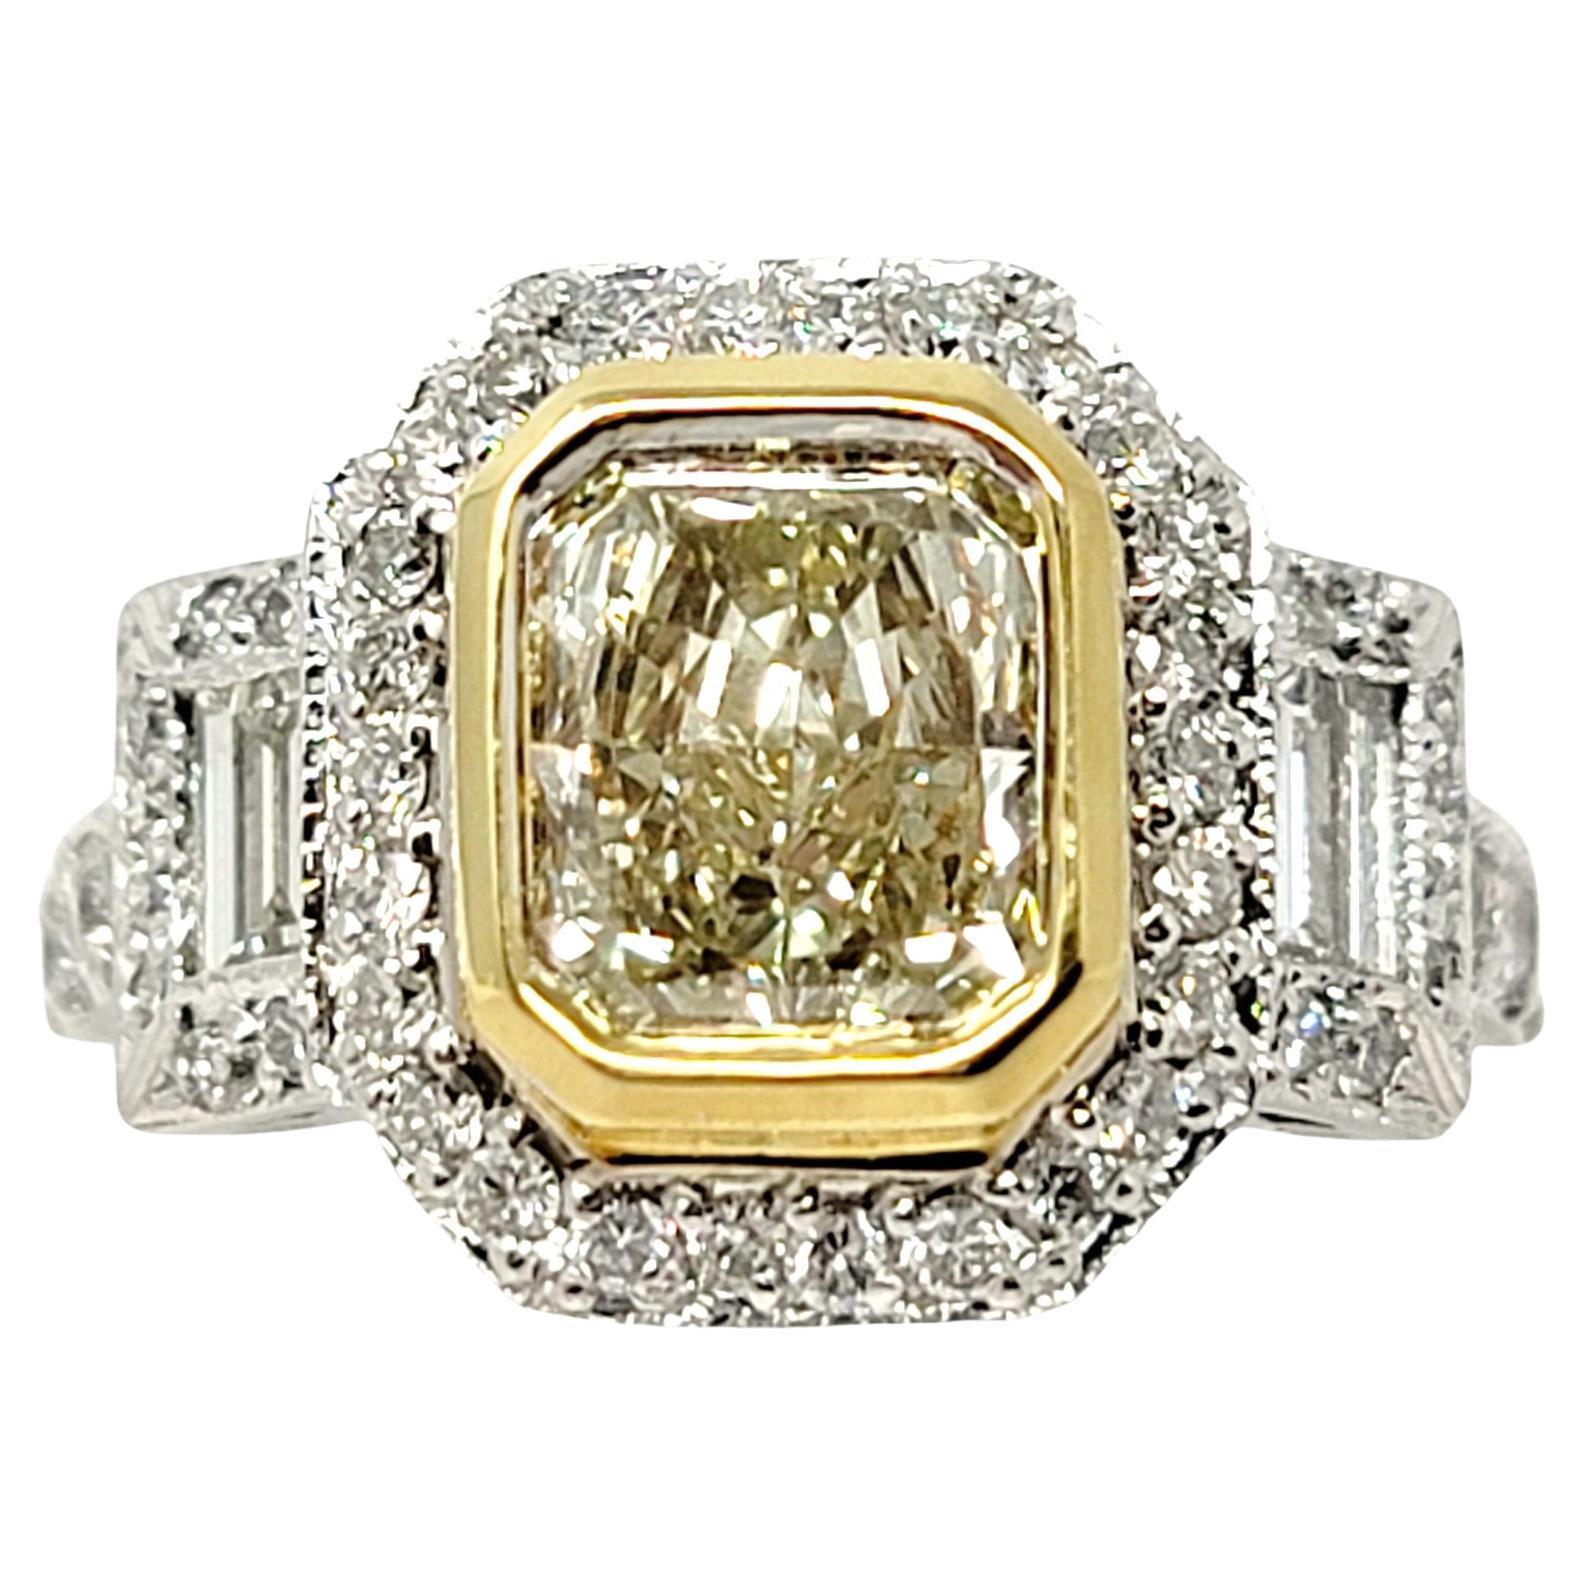 Bague de fiançailles halo de diamants jaunes clairs taille radiant et diamants blancs baguettes